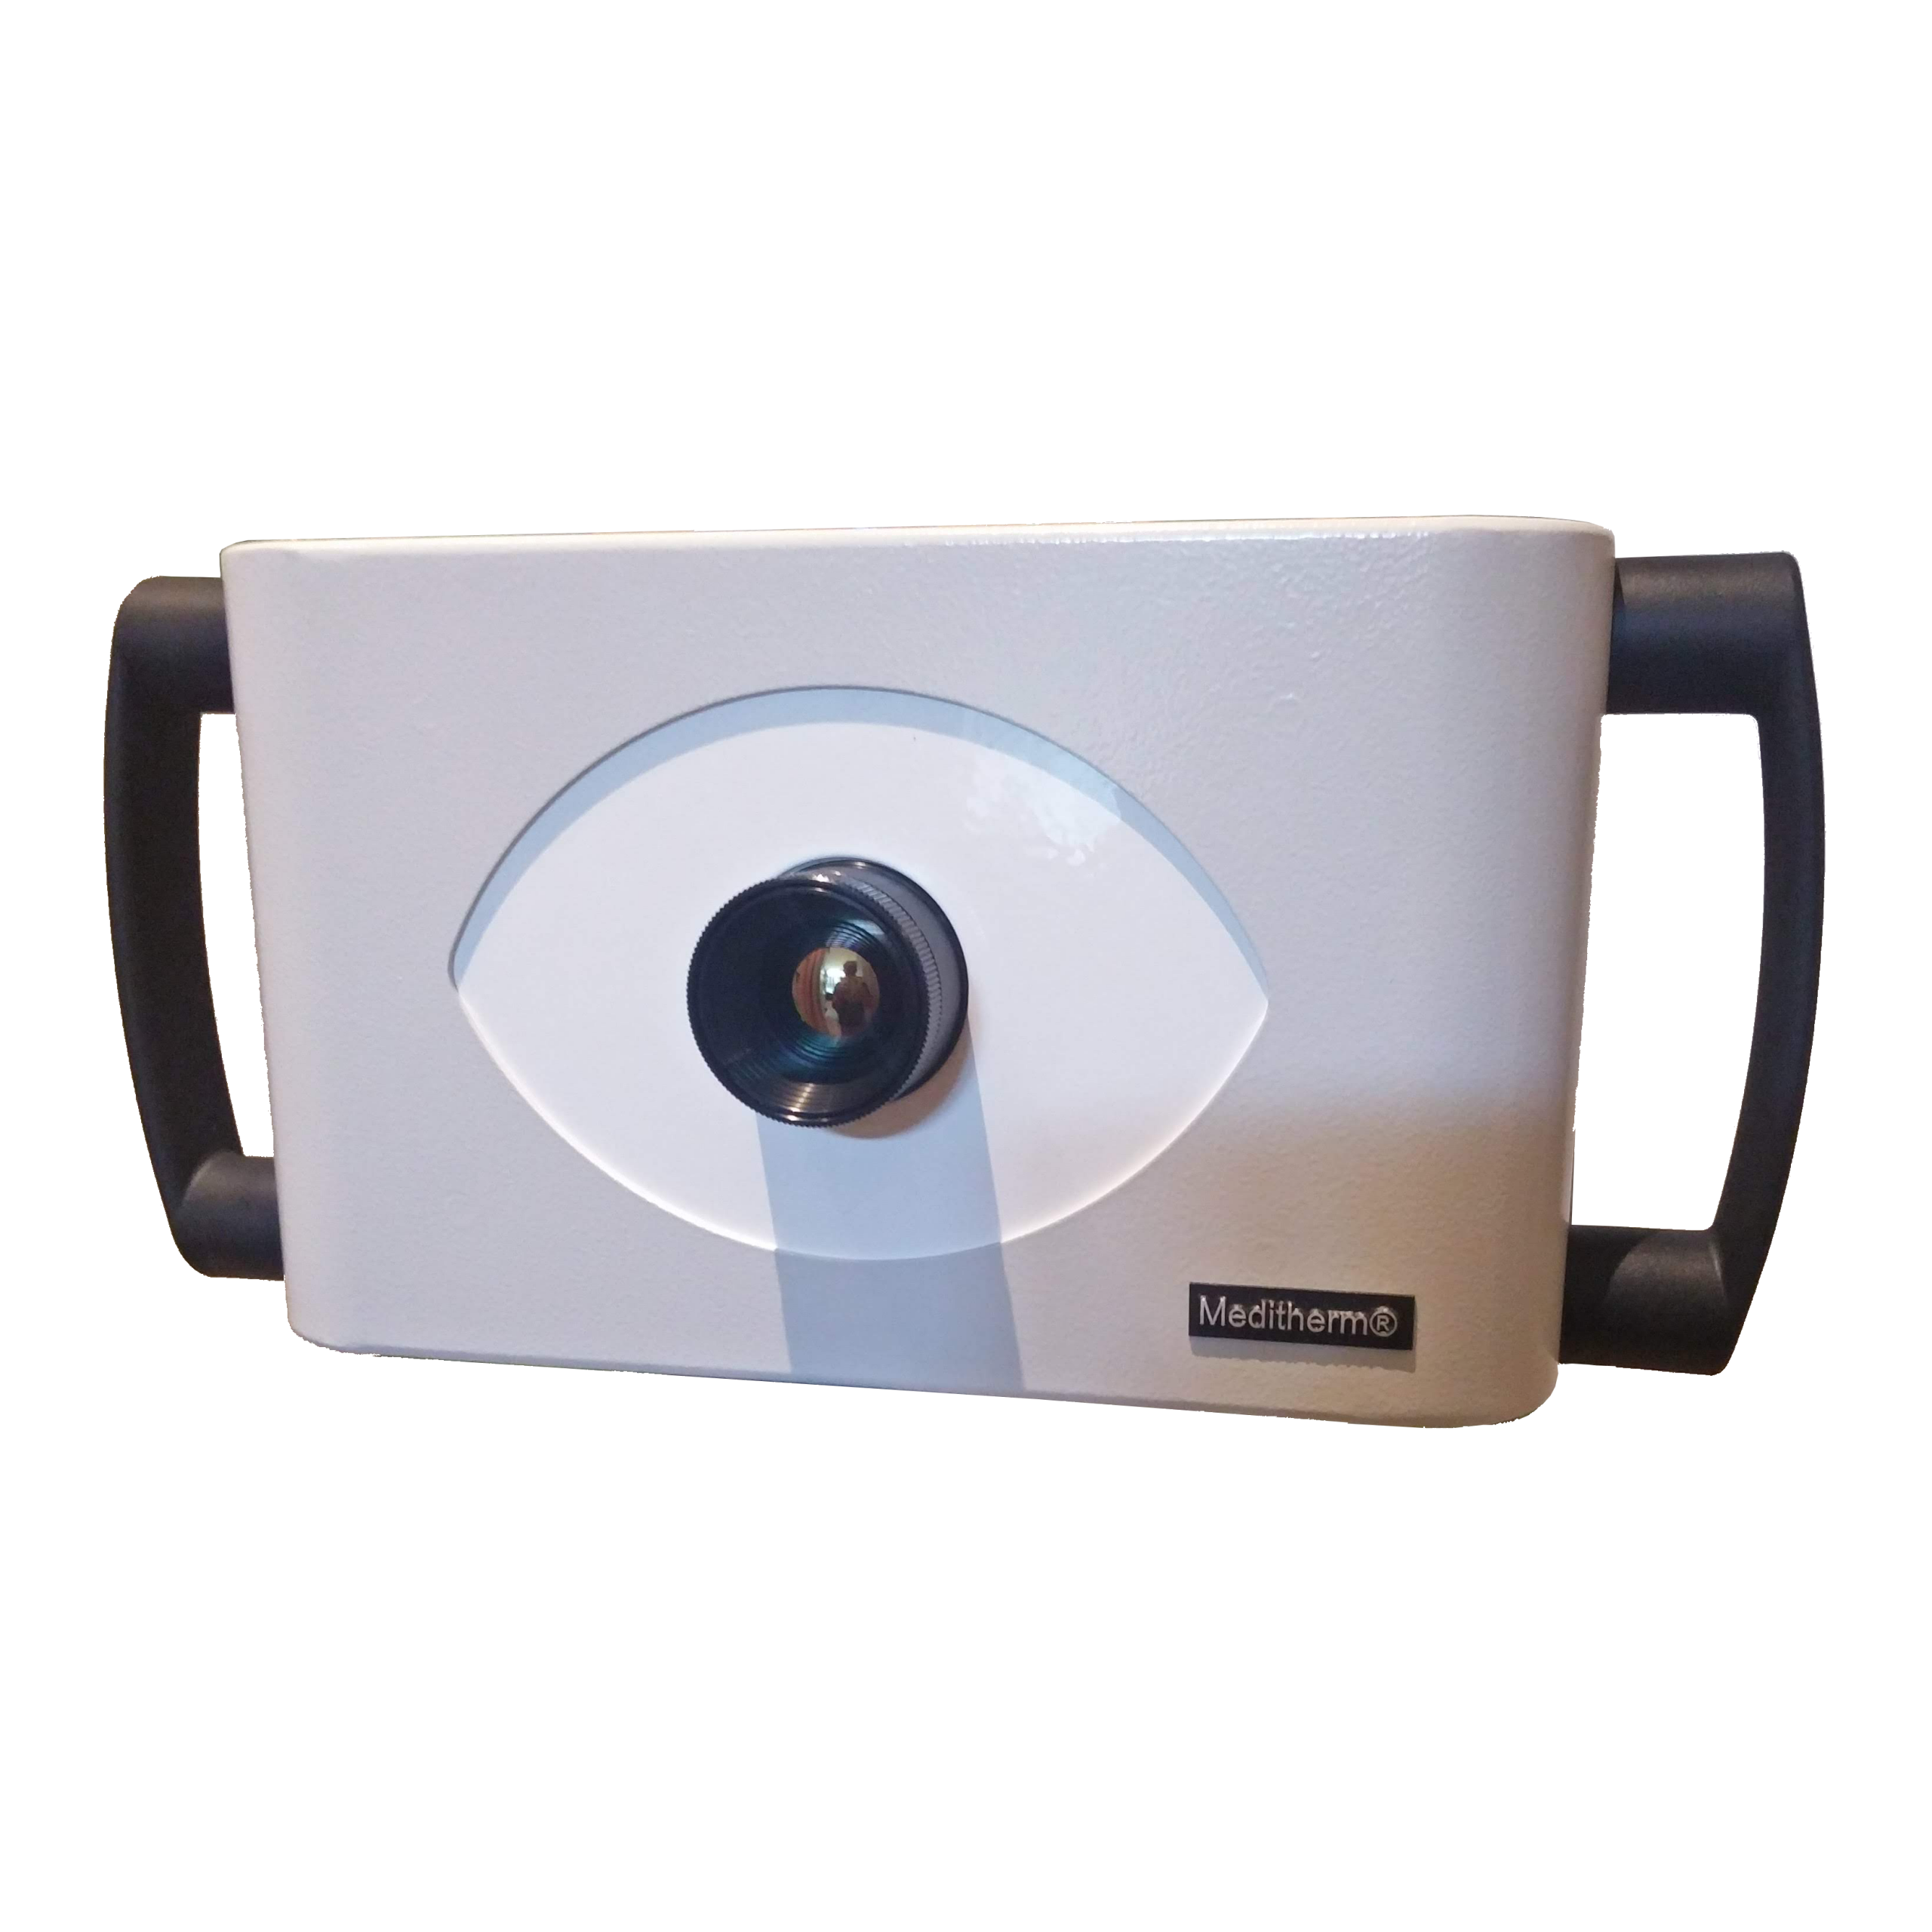 Europese primeur: De Meditherm Iris 640 camera